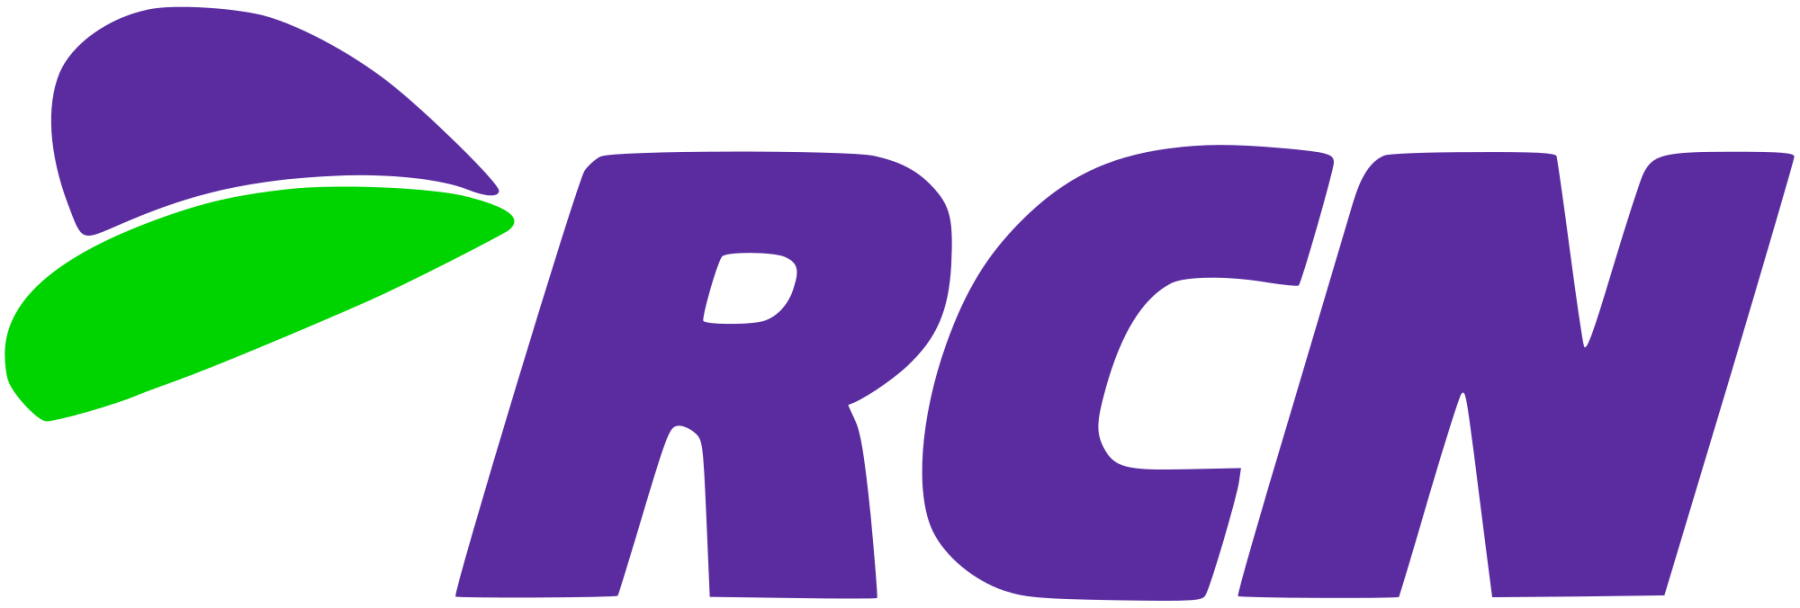 RCN_Corporation_logo.svg_